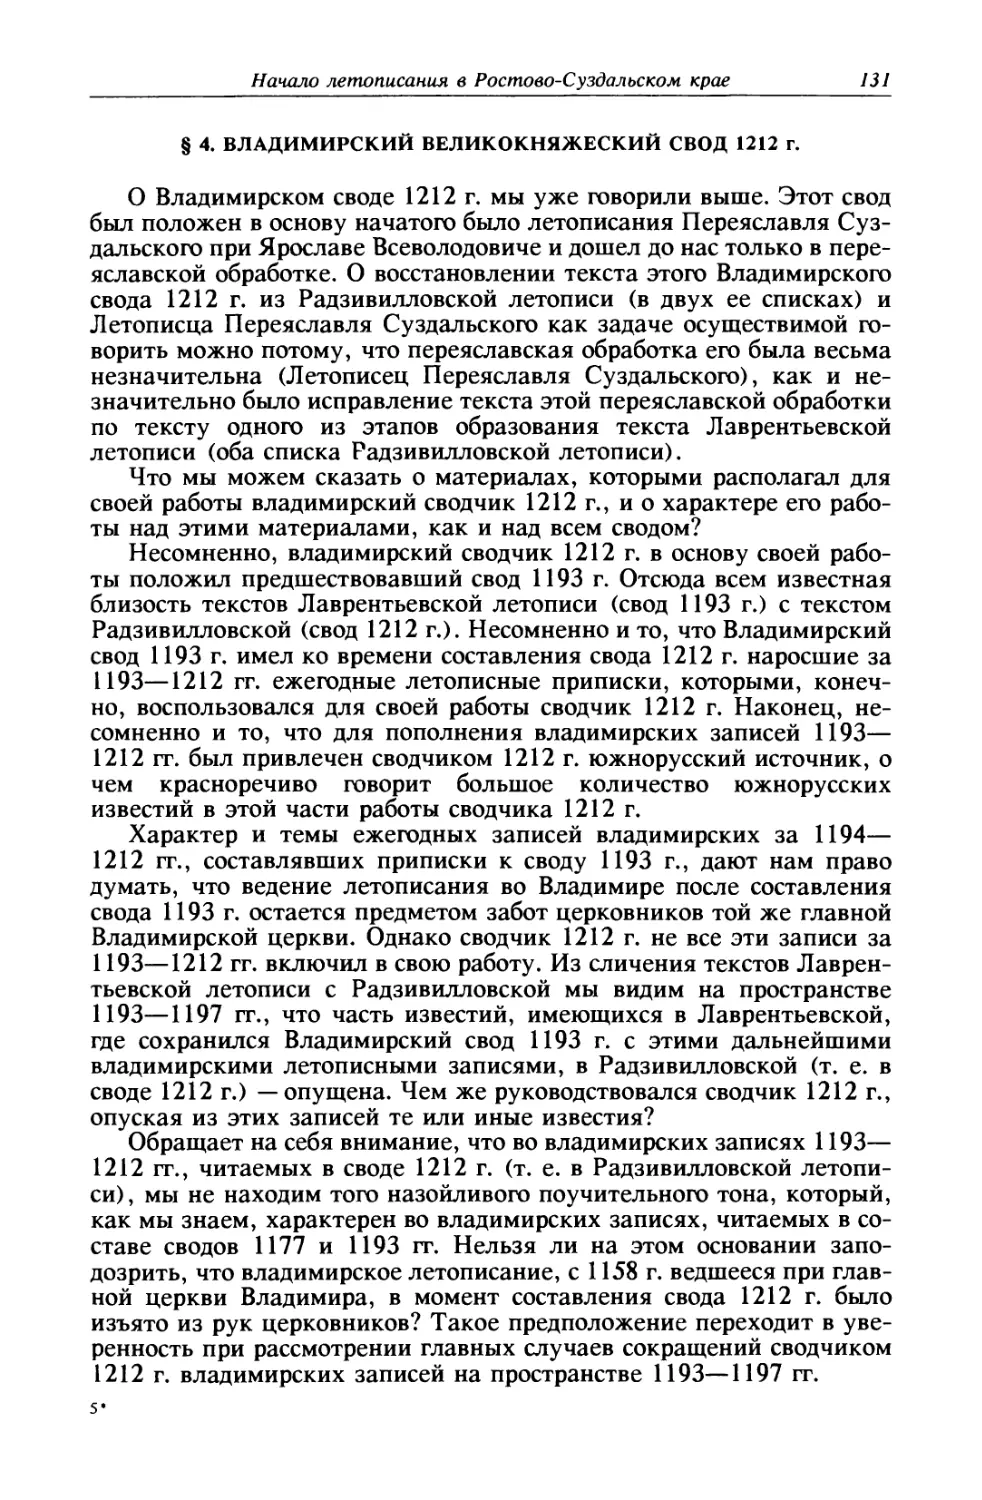 § 4. Владимирский великокняжеский свод 1212 г